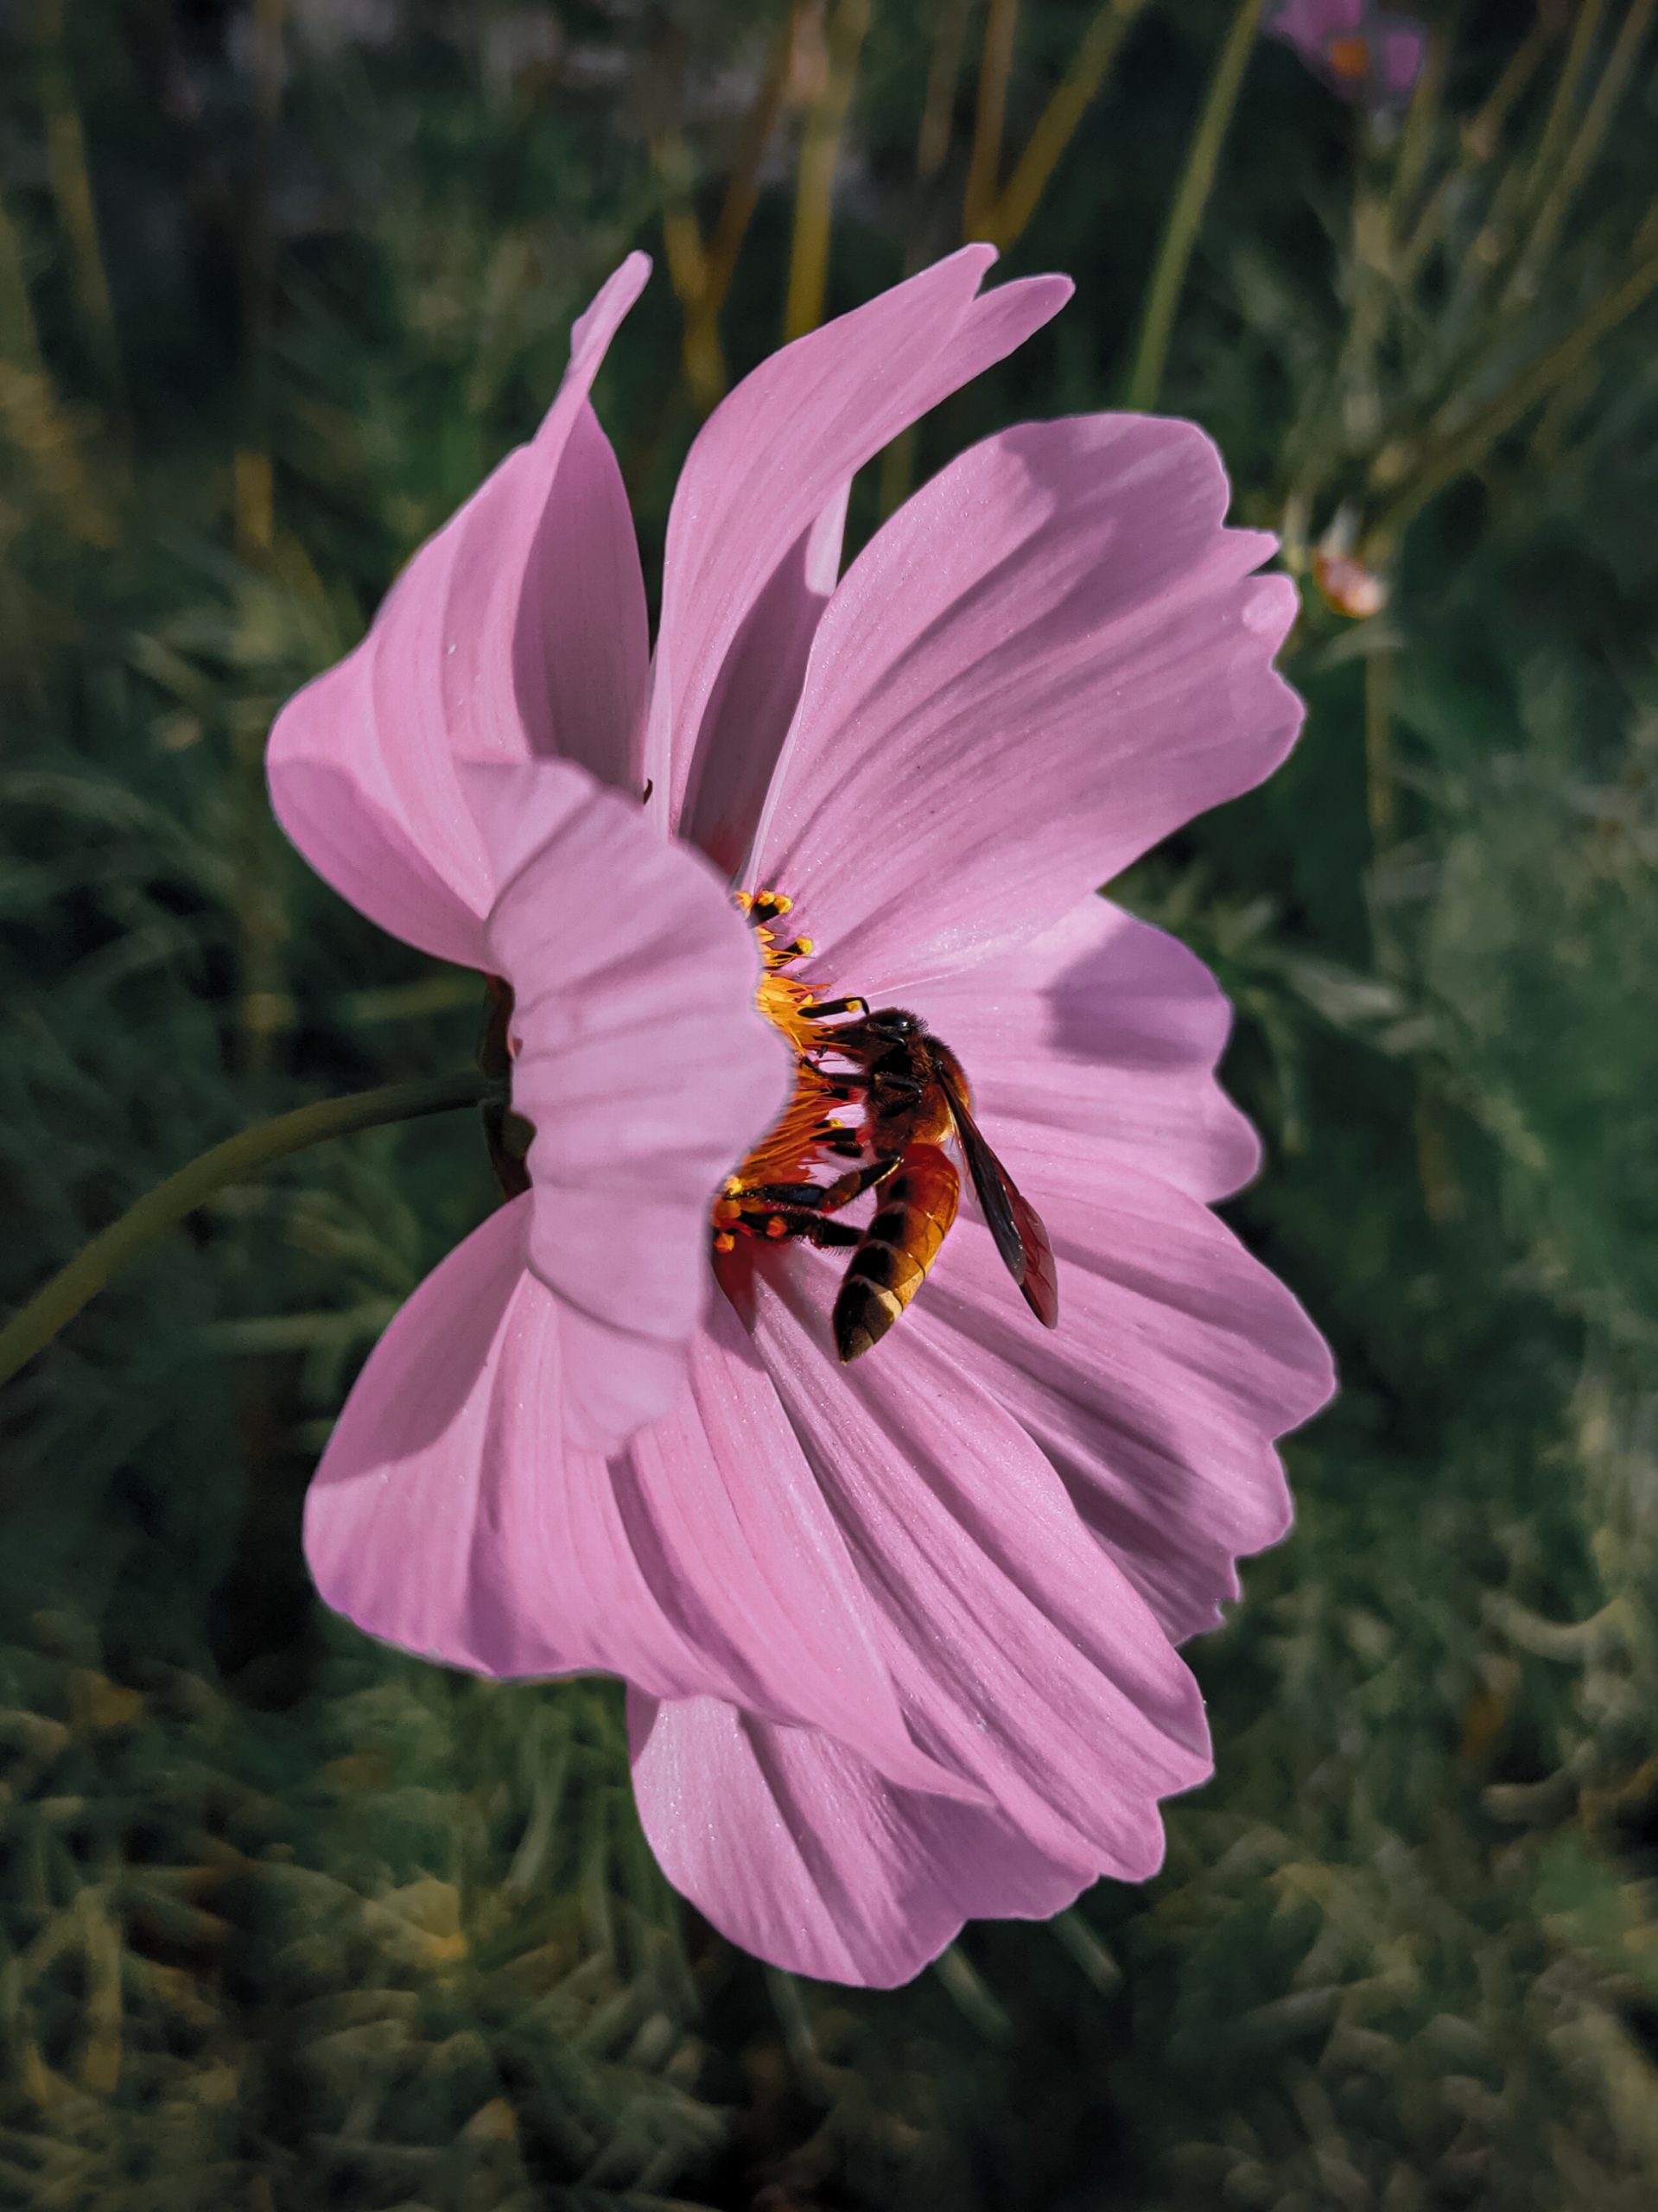 A Honey bee consuming nectar